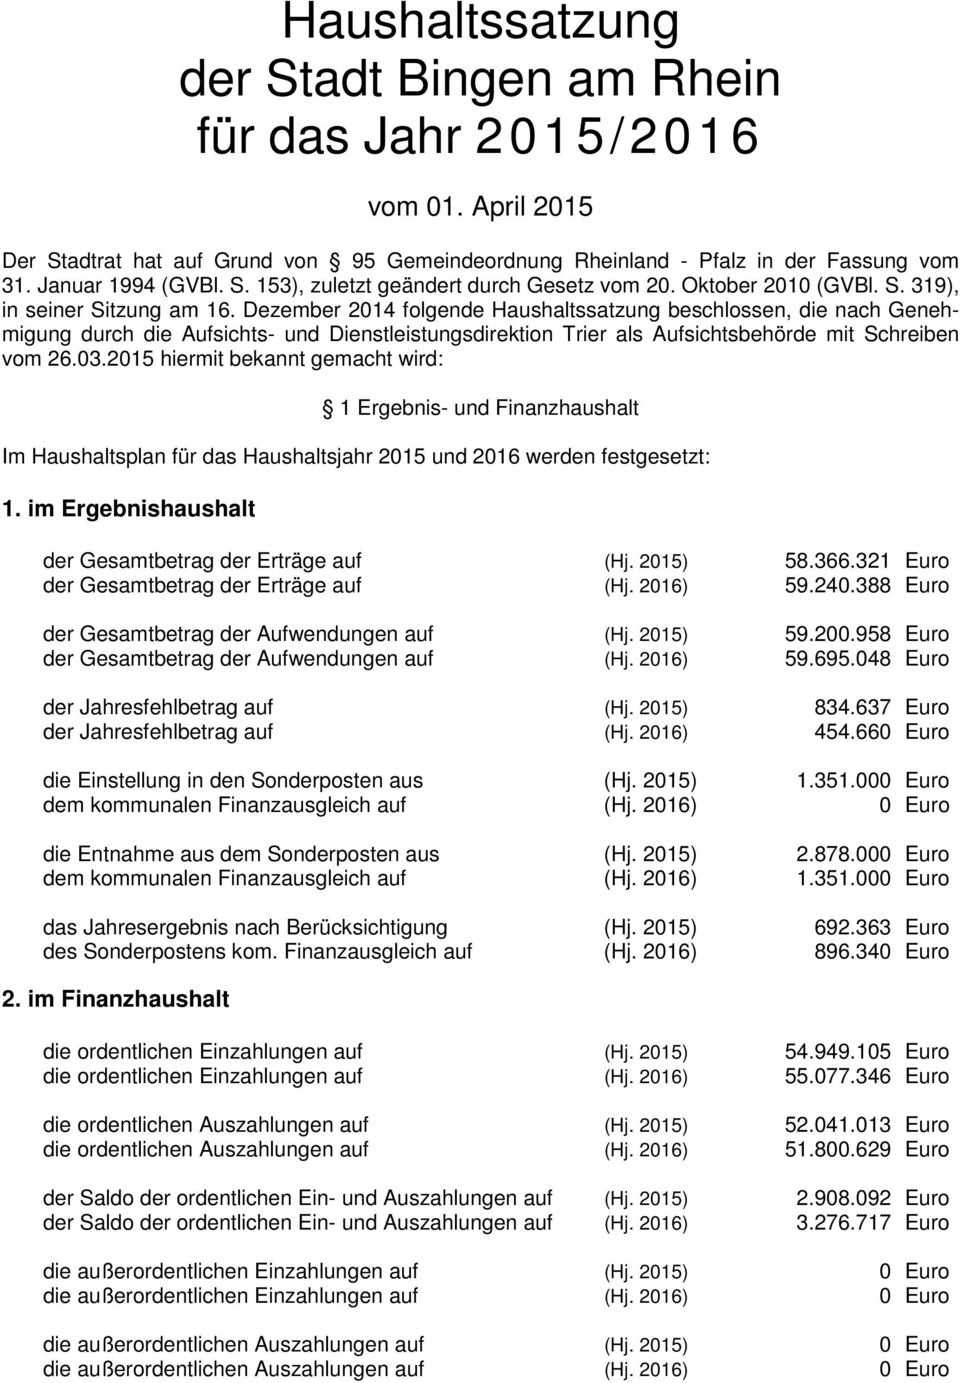 Dezember 2014 folgende Haushaltssatzung beschlossen, die nach Genehmigung durch die Aufsichts- und Dienstleistungsdirektion Trier als Aufsichtsbehörde mit Schreiben vom 26.03.